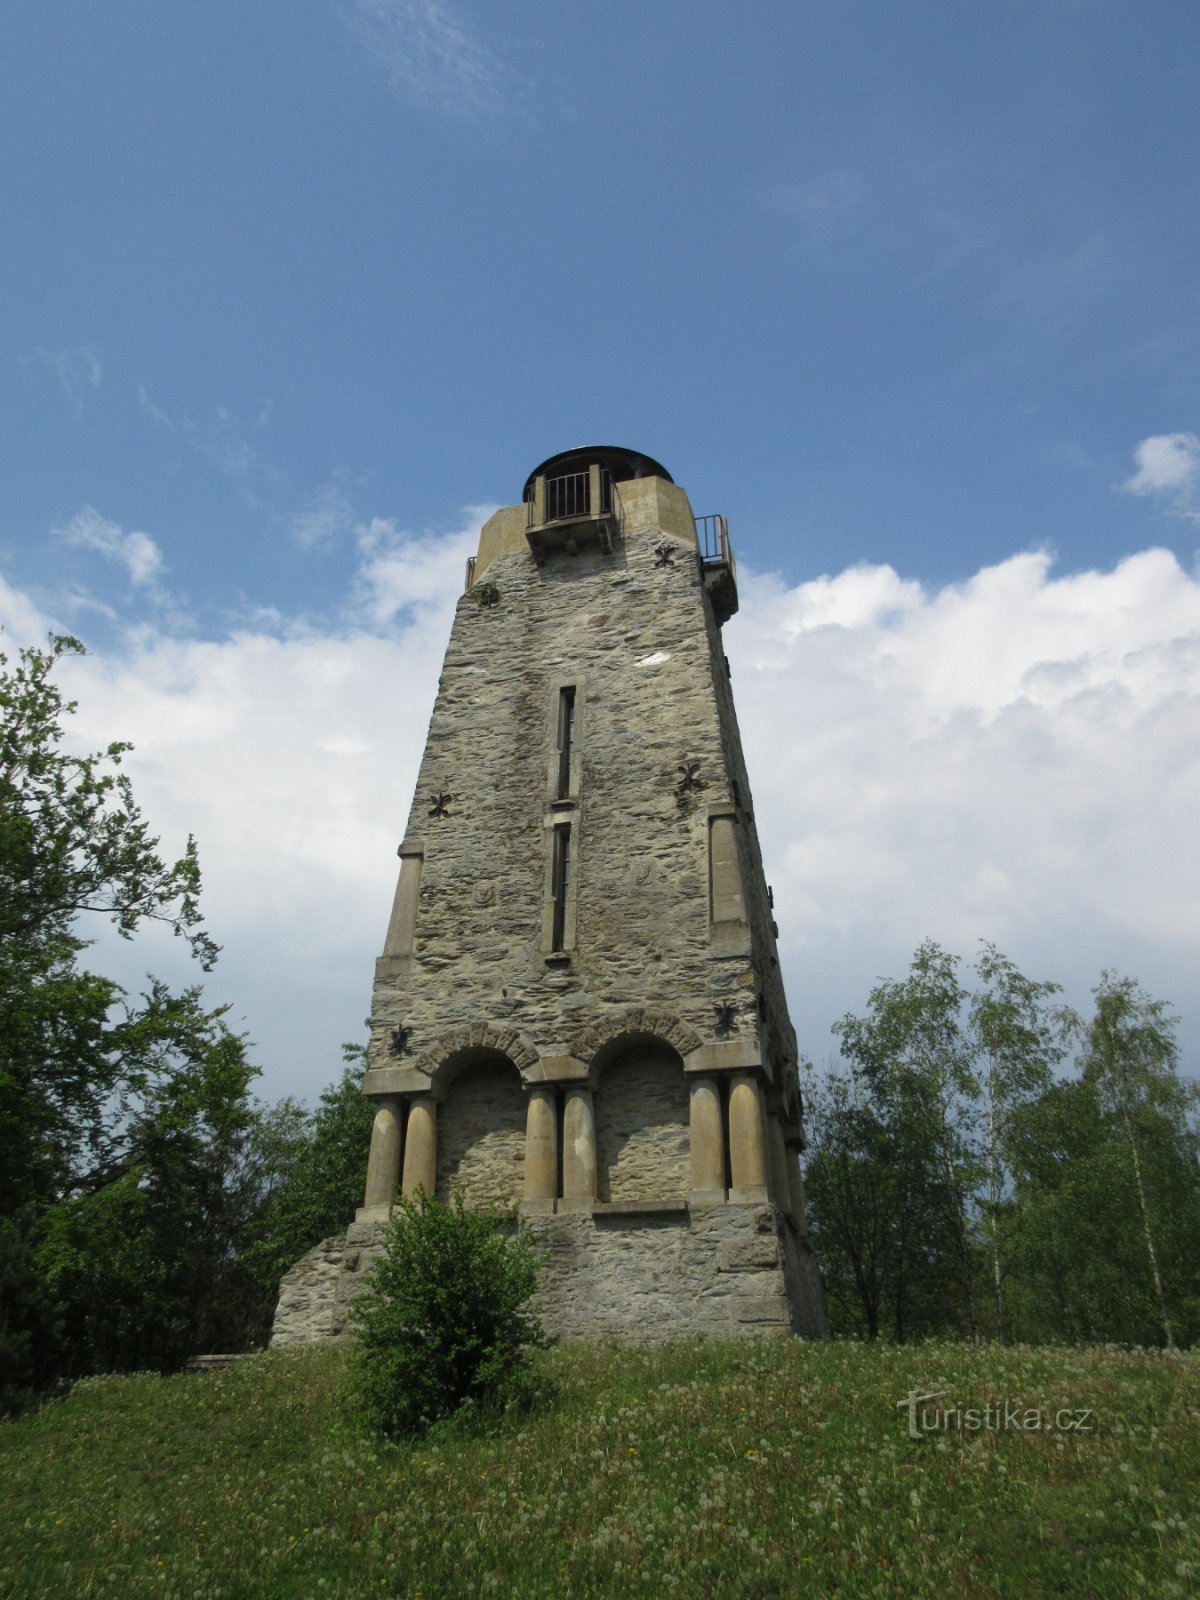 Torre de vigia de Bismarck